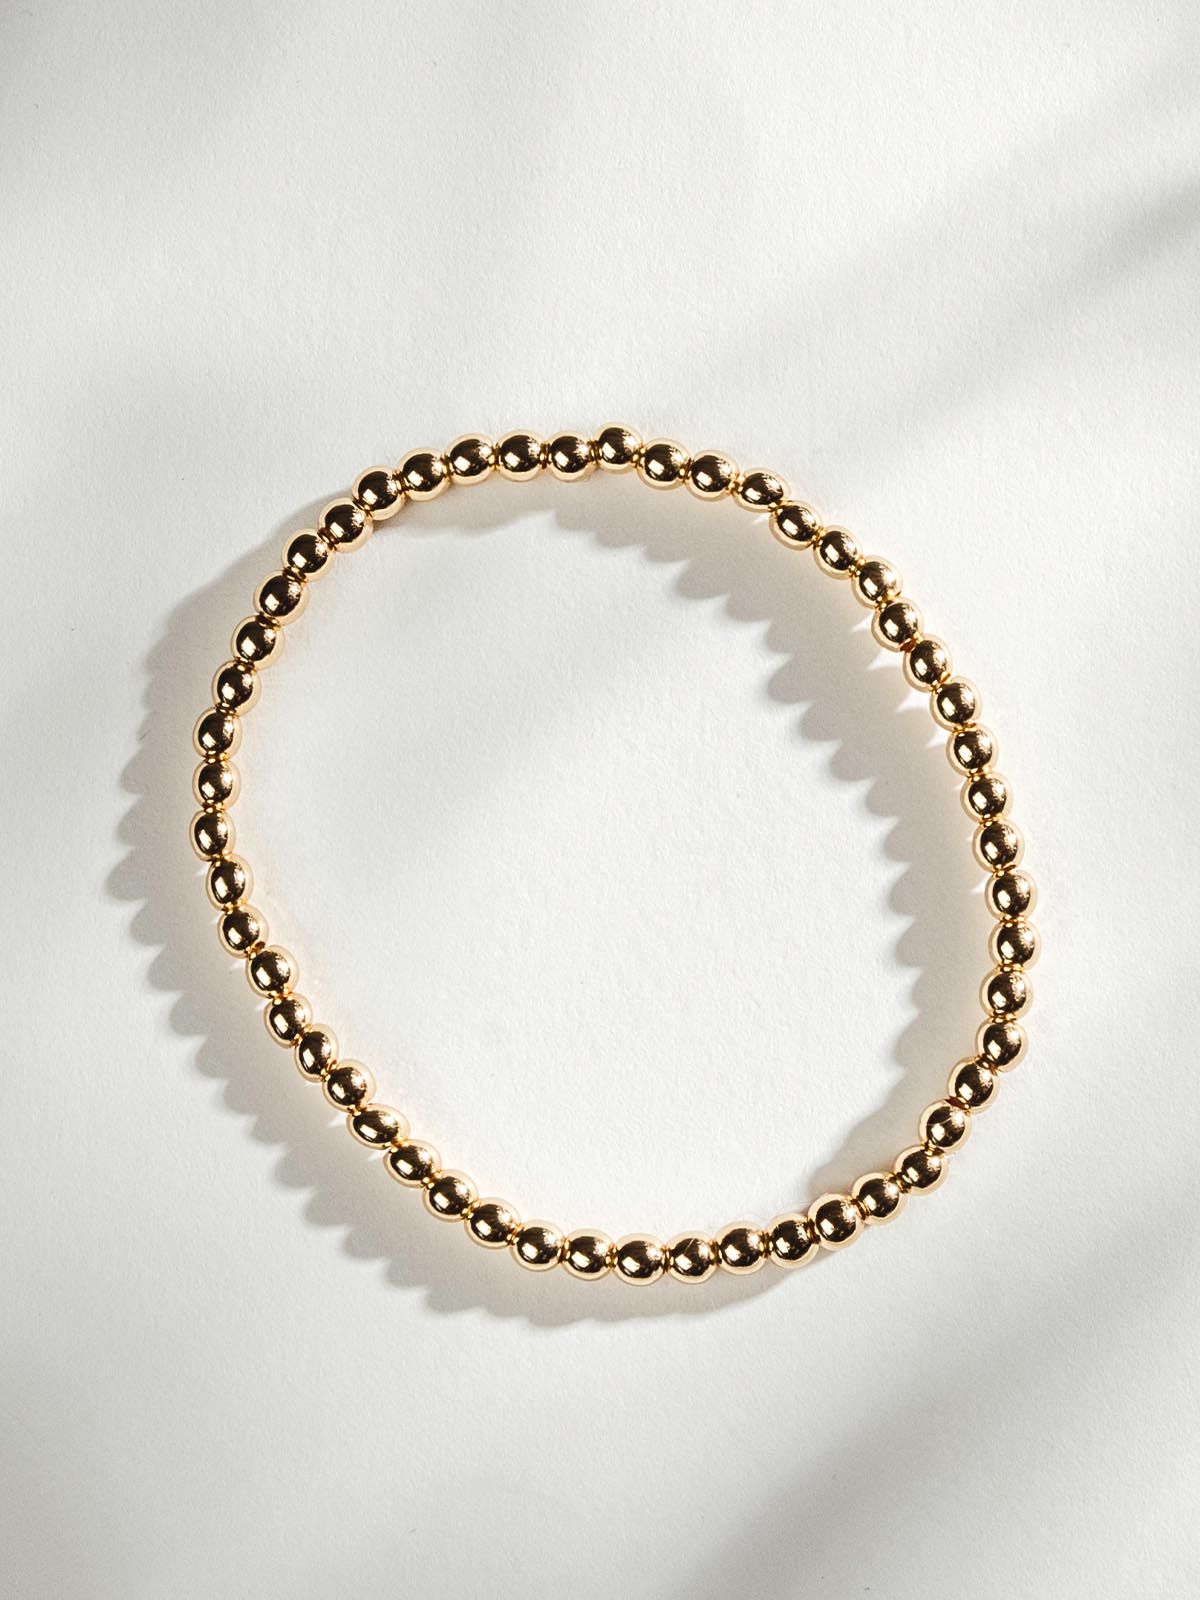 Gold Beaded Bracelet on White Background